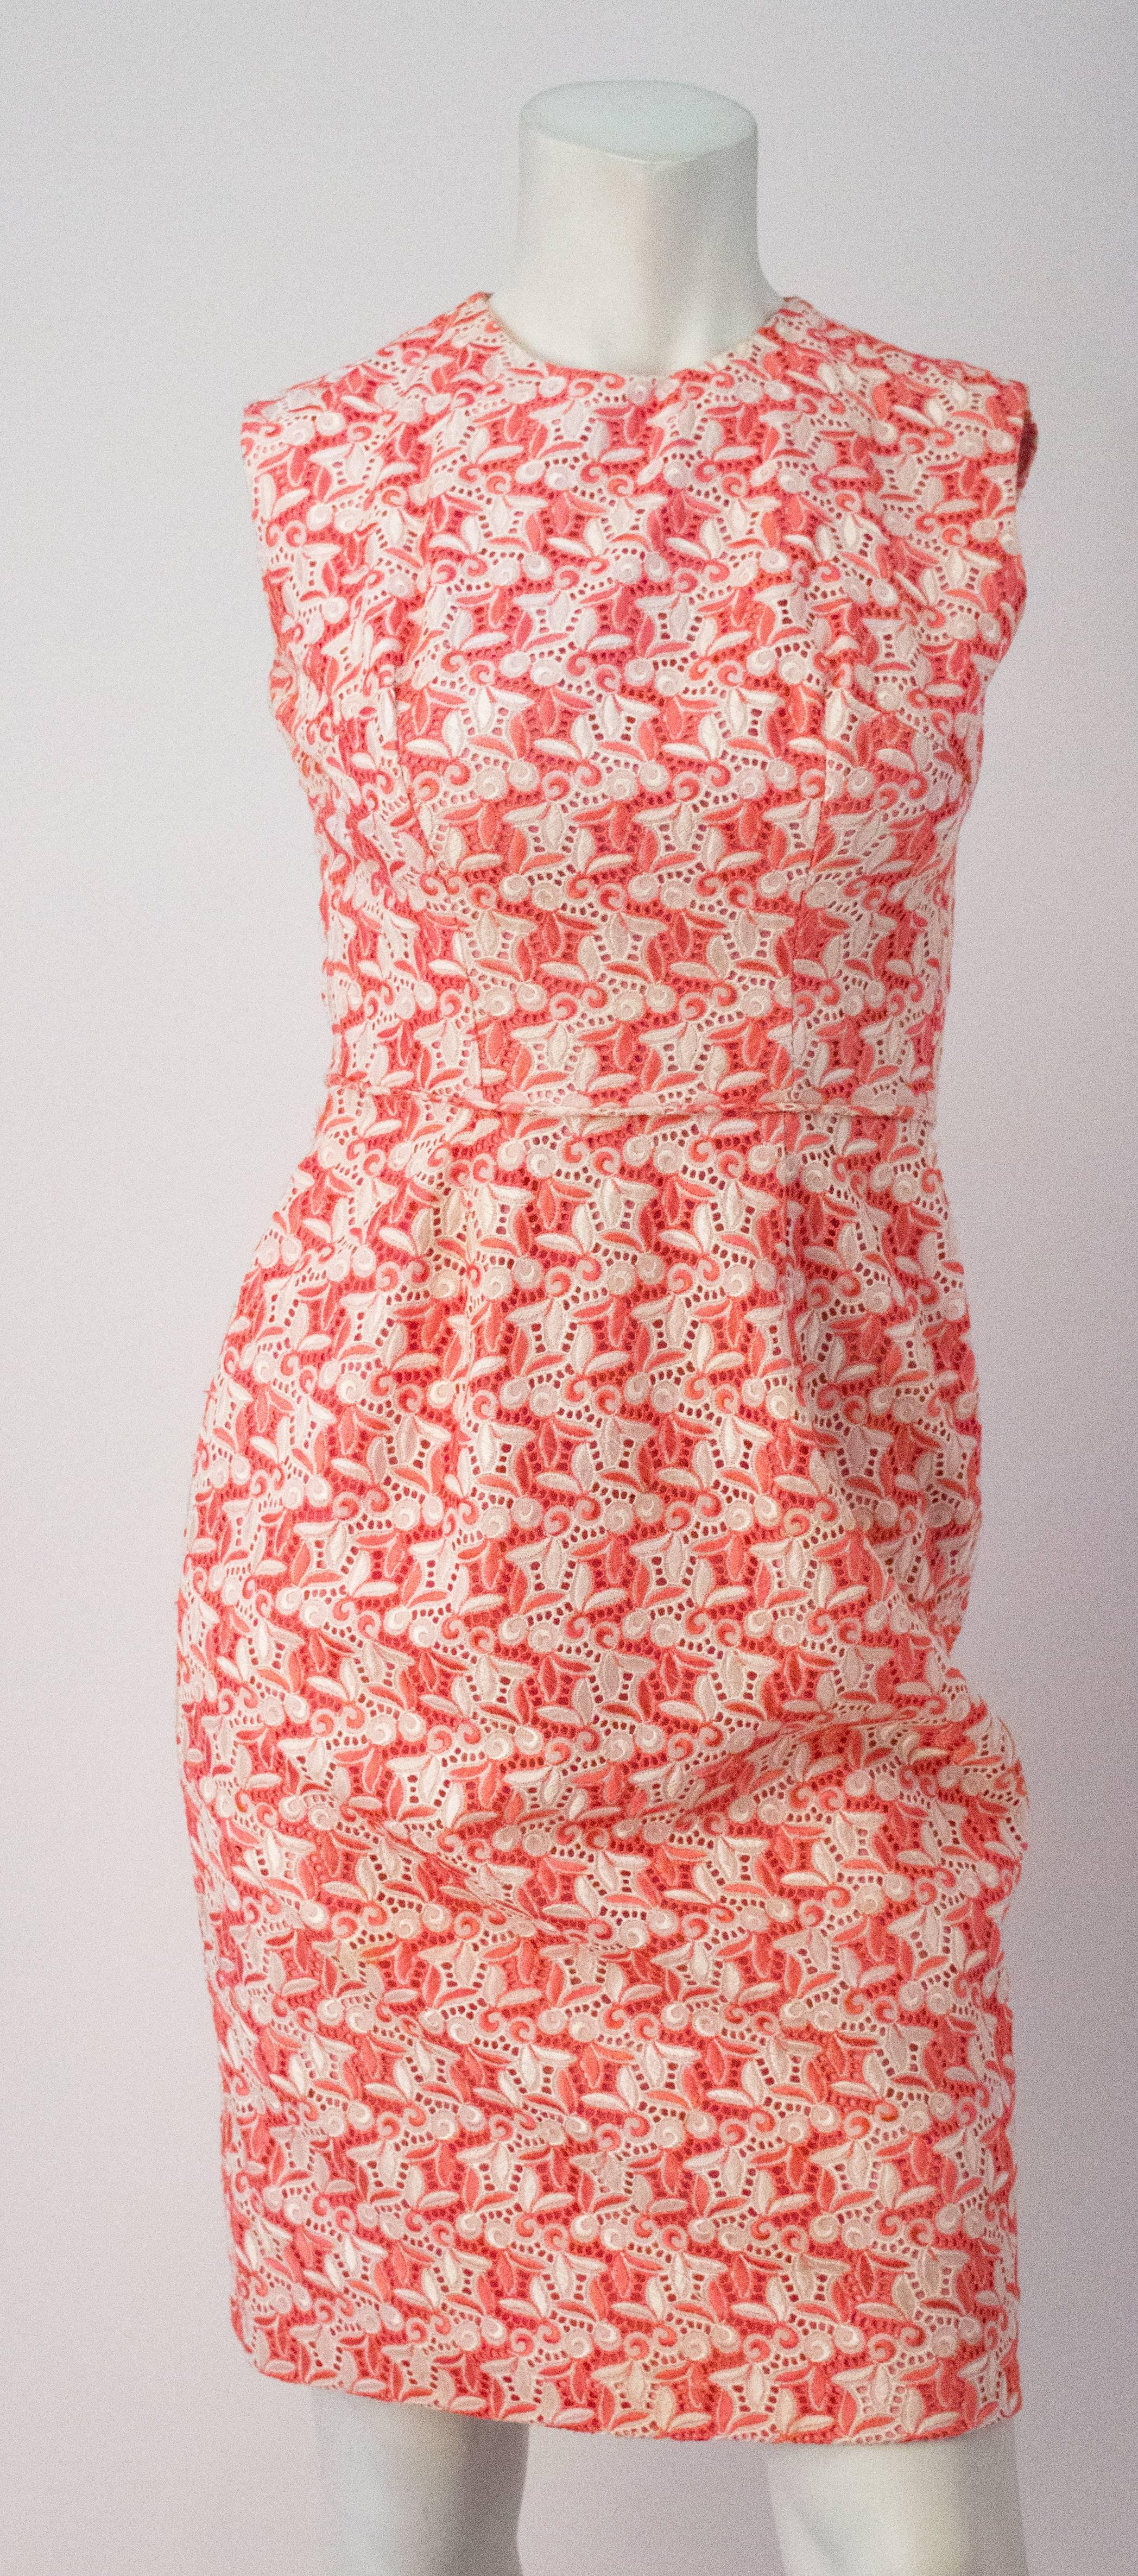 50er Jahre Nelke Rosa bestickt Baumwolle Öse Etuikleid mit passenden Bolero.  Juwelenausschnitt. 
Reißverschluss hinten aus Metall.

Dieses Set hat die folgenden Abmessungen:

Jacke
Schultern: 14